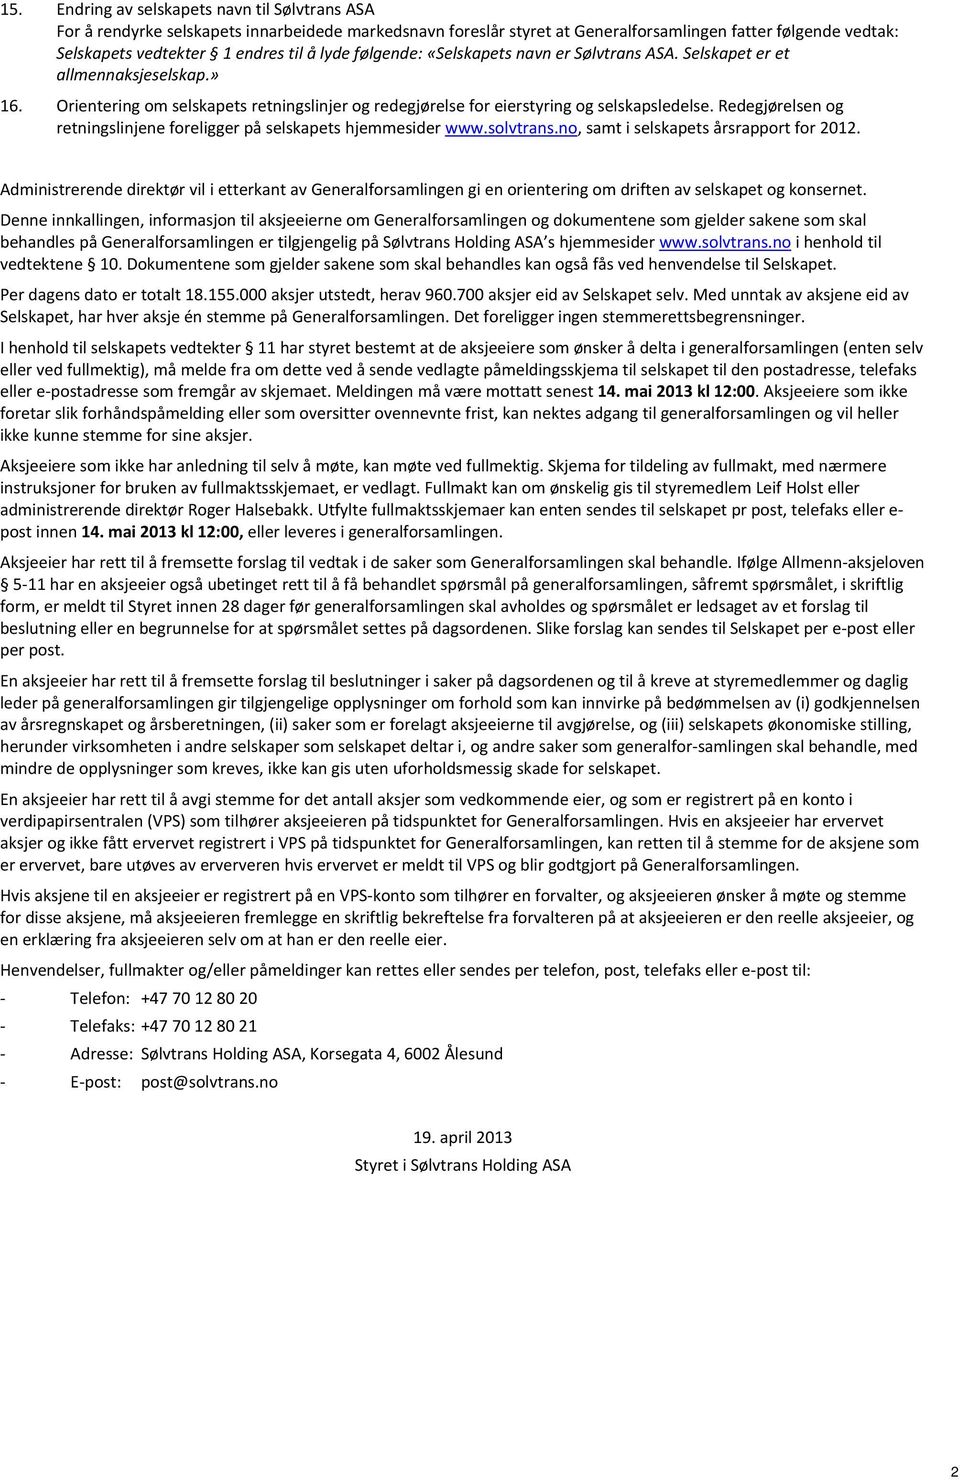 Redegjørelsen og retningslinjene foreligger på selskapets hjemmesider www.solvtrans.no, samt i selskapets årsrapport for 2012.